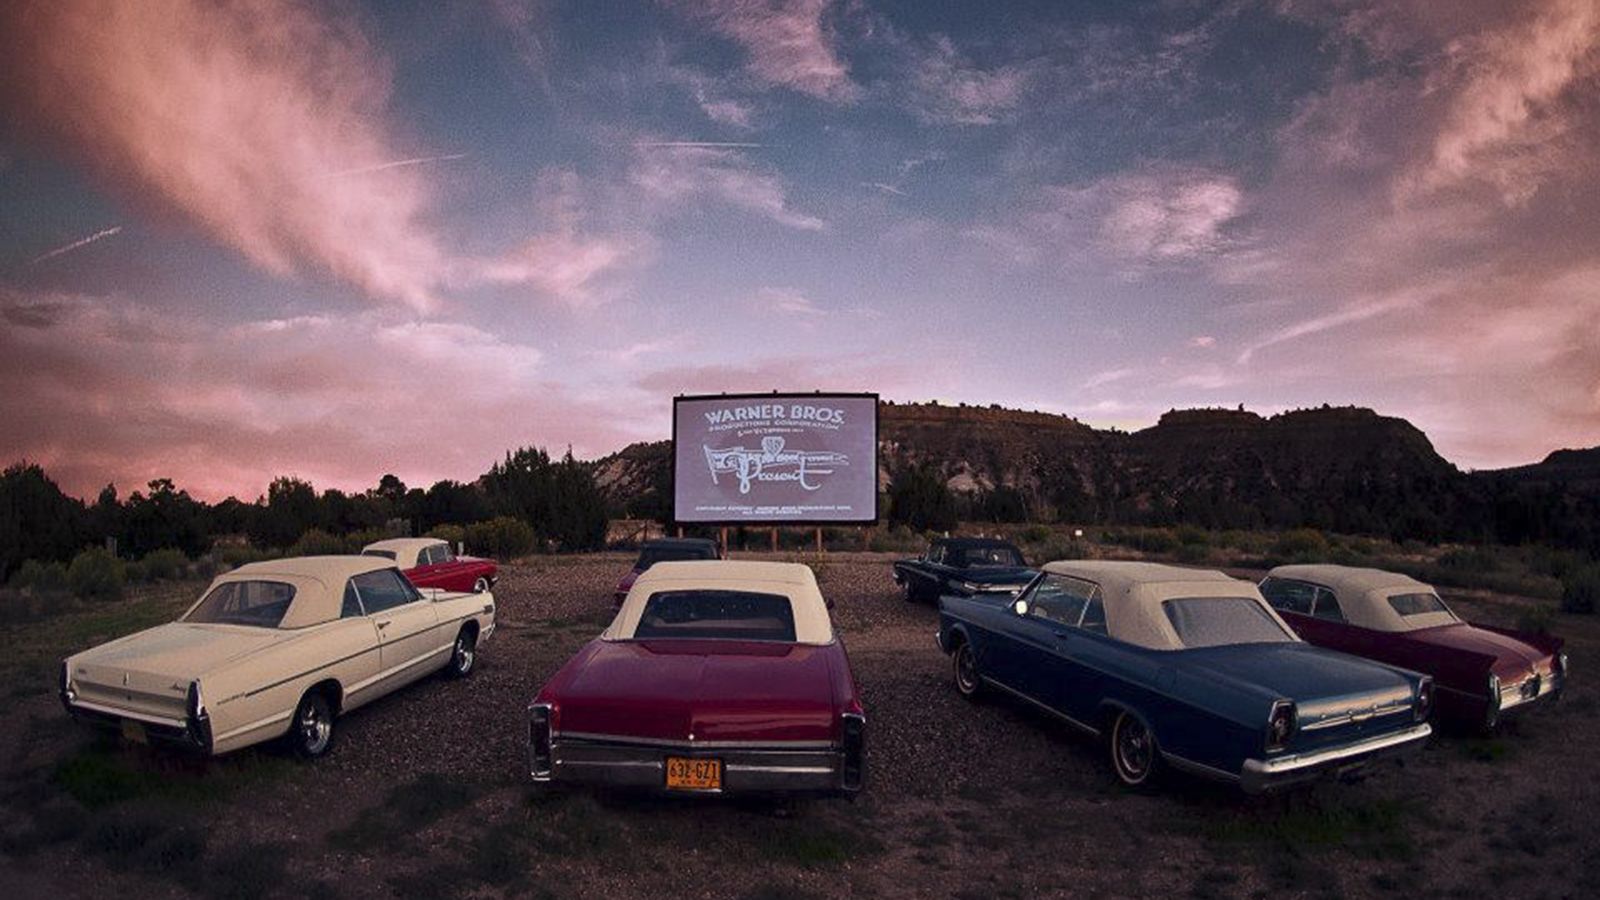 Cinemas drive-in nos EUA atraem público jovem com apelo à nostalgia e  sessões 'românticas' a céu aberto, Cinema